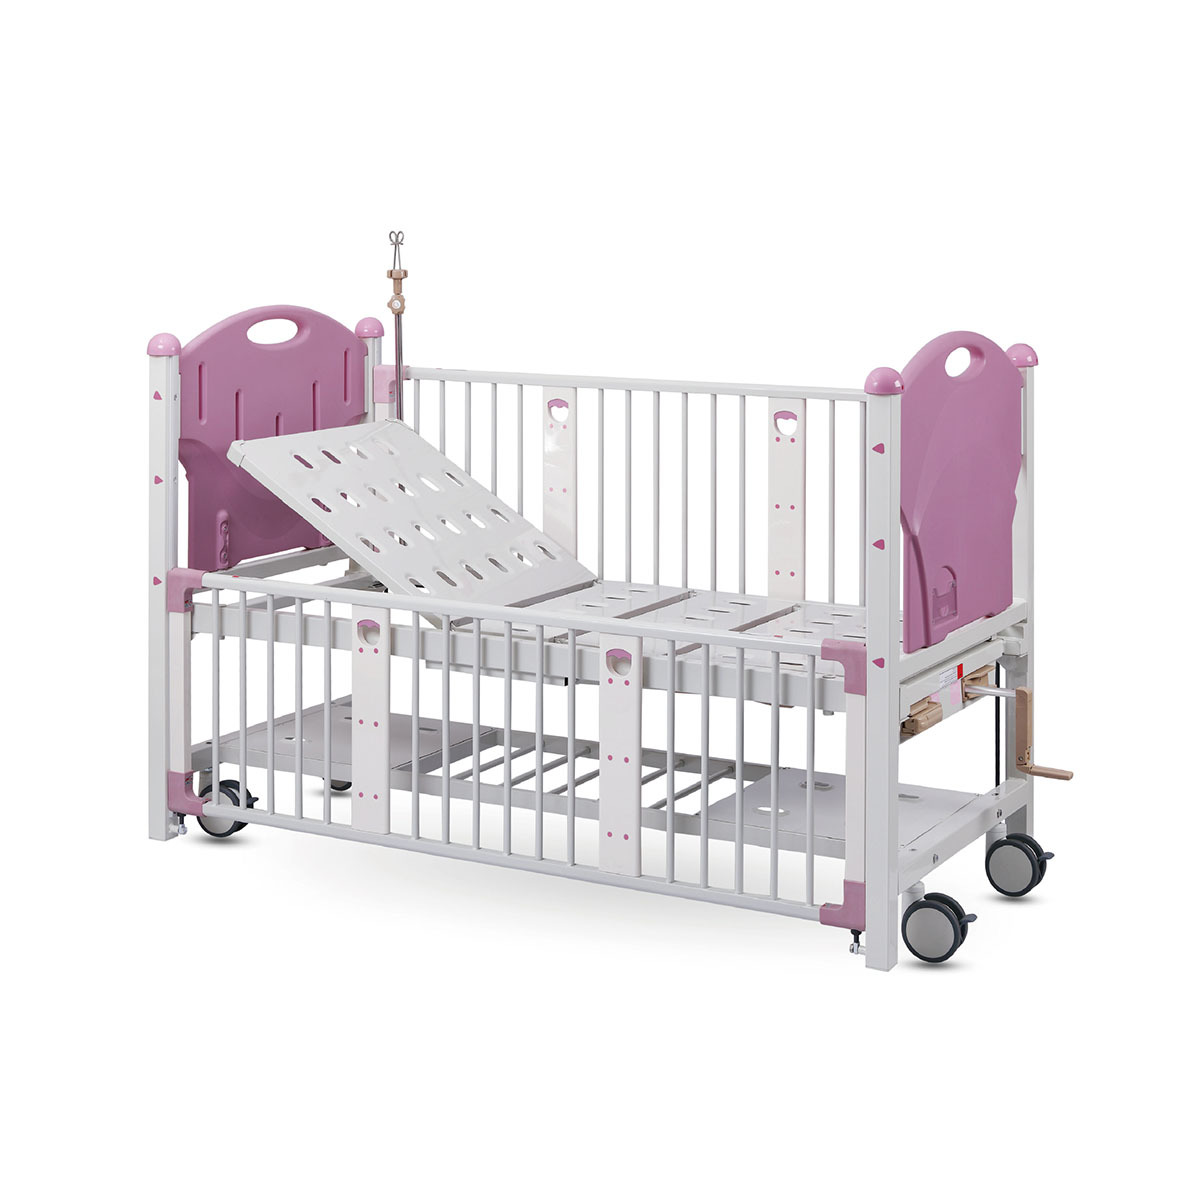 HL-A141A Детская кровать